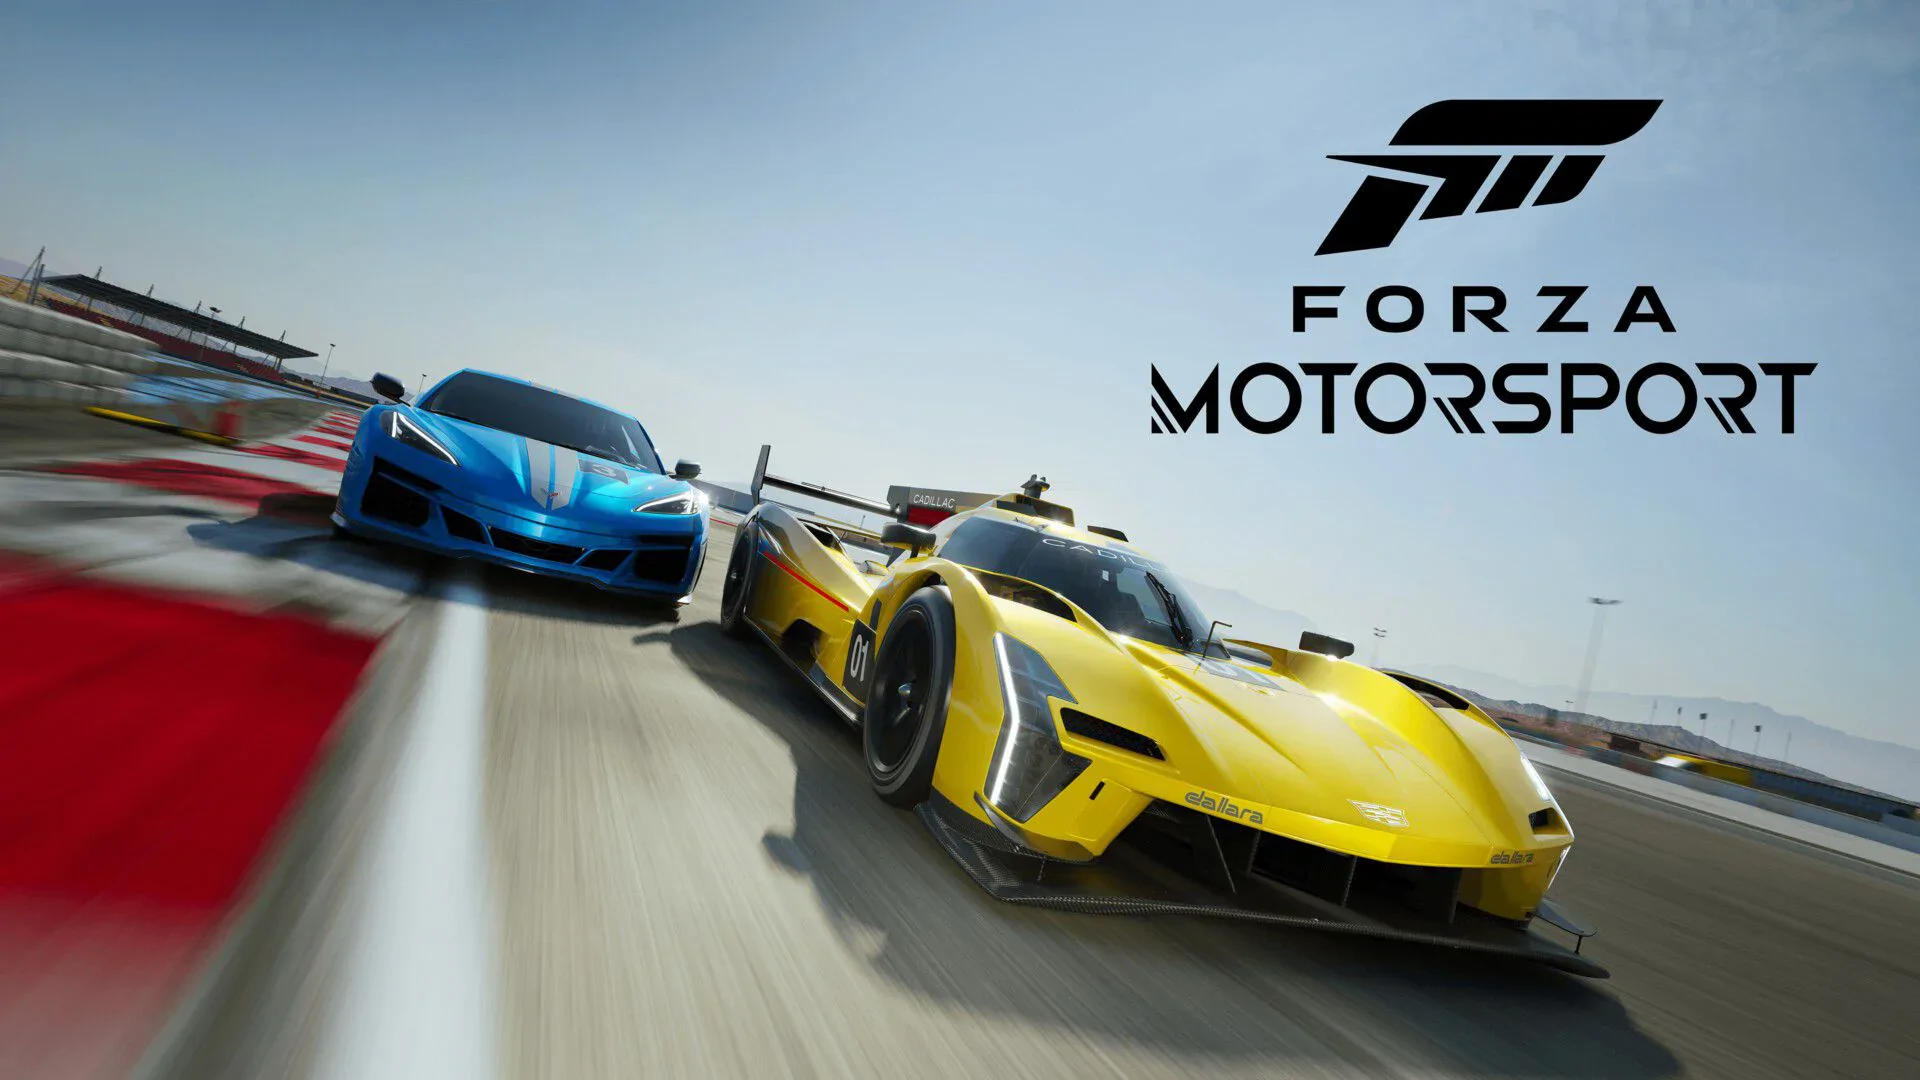 Forza Motorsport - recenzja gry. Powrót królowej? Niekoniecznie.